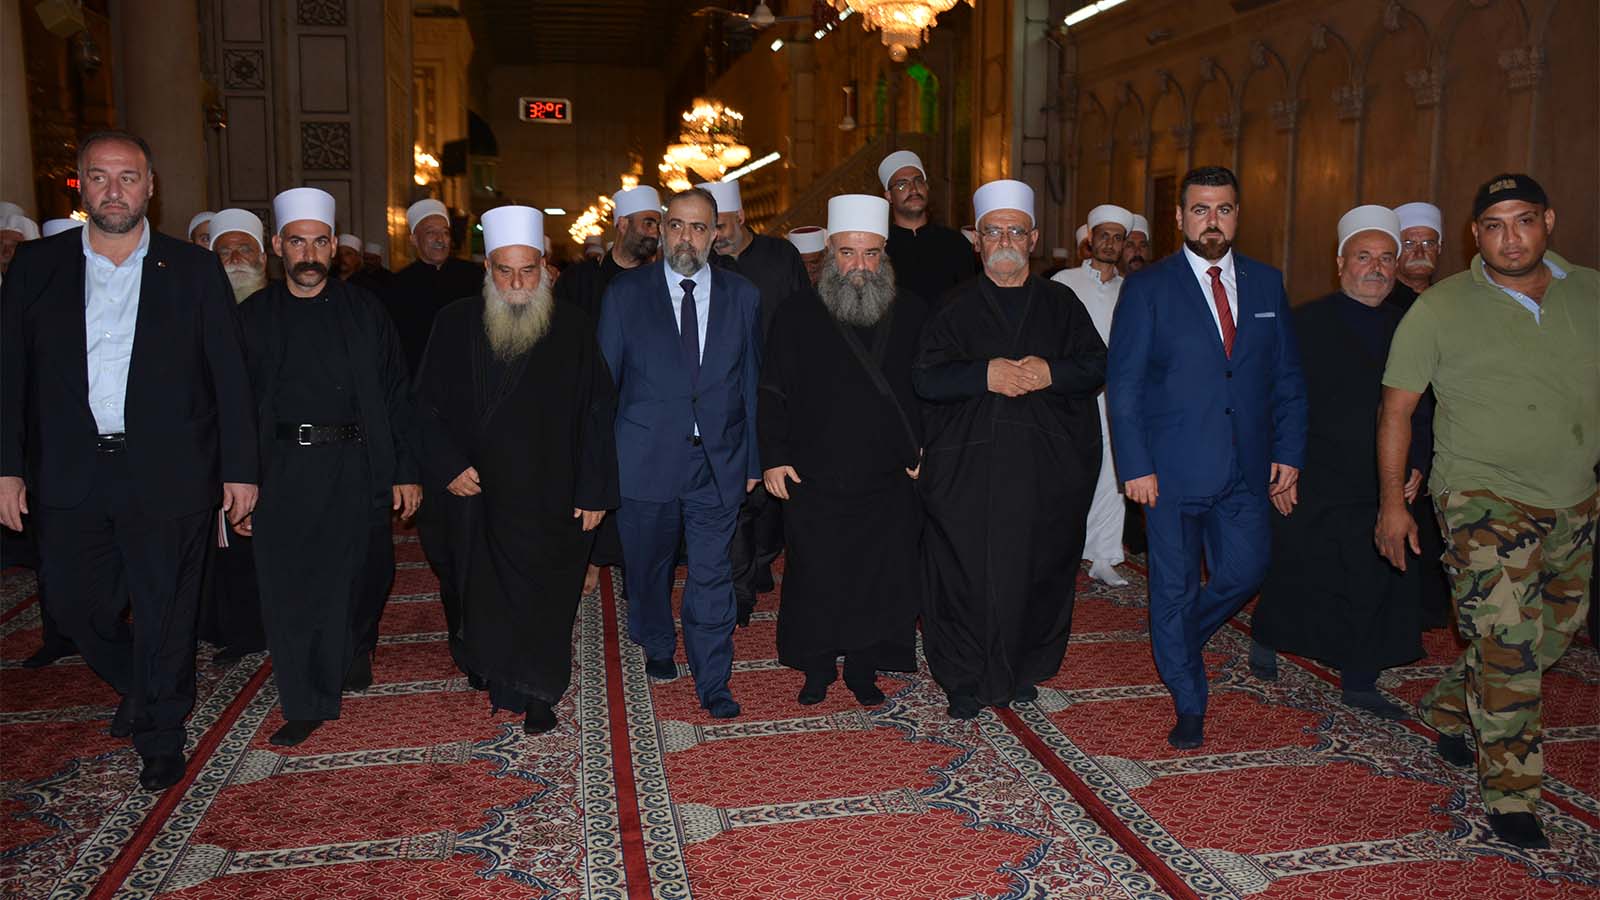 אנשי דת דרוזים מישראל בכנס בסוריה עם שר ההקדשים הסורי במסגד האמוי בדמשק, ספטמבר 2018 (קרדיט: ועדת הקשר)